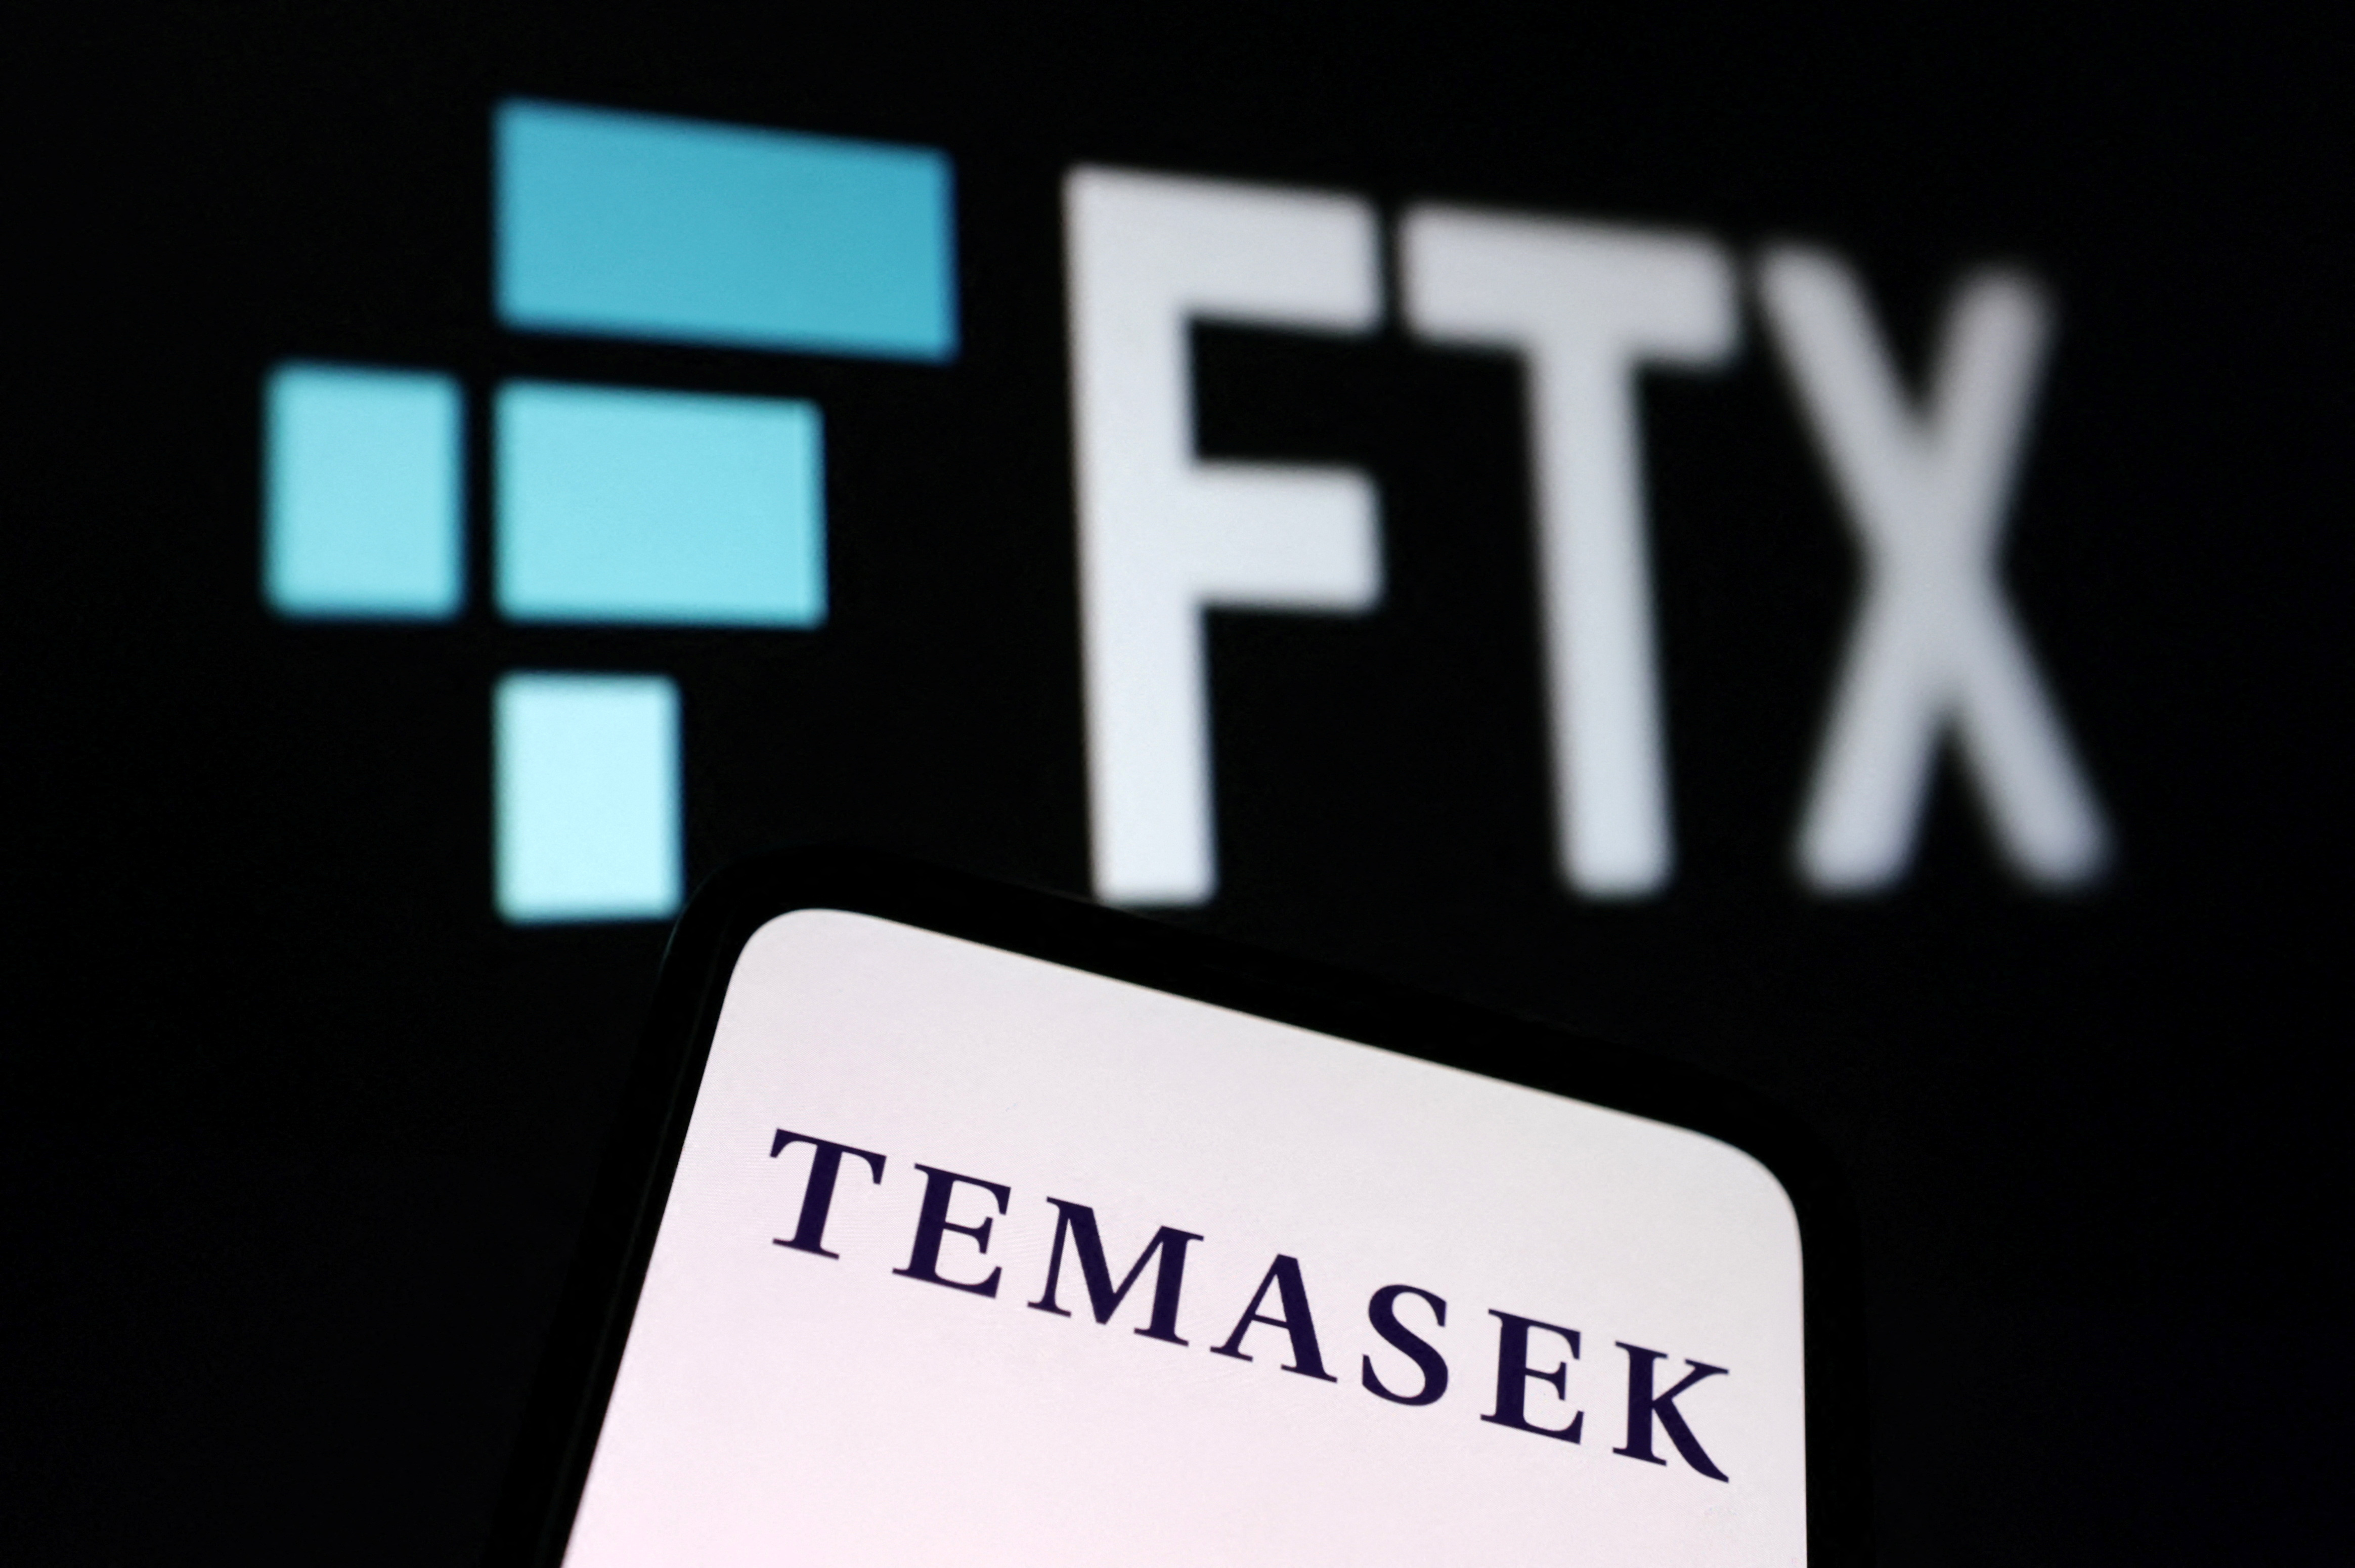 Illustration shows FTX and Temasek logos